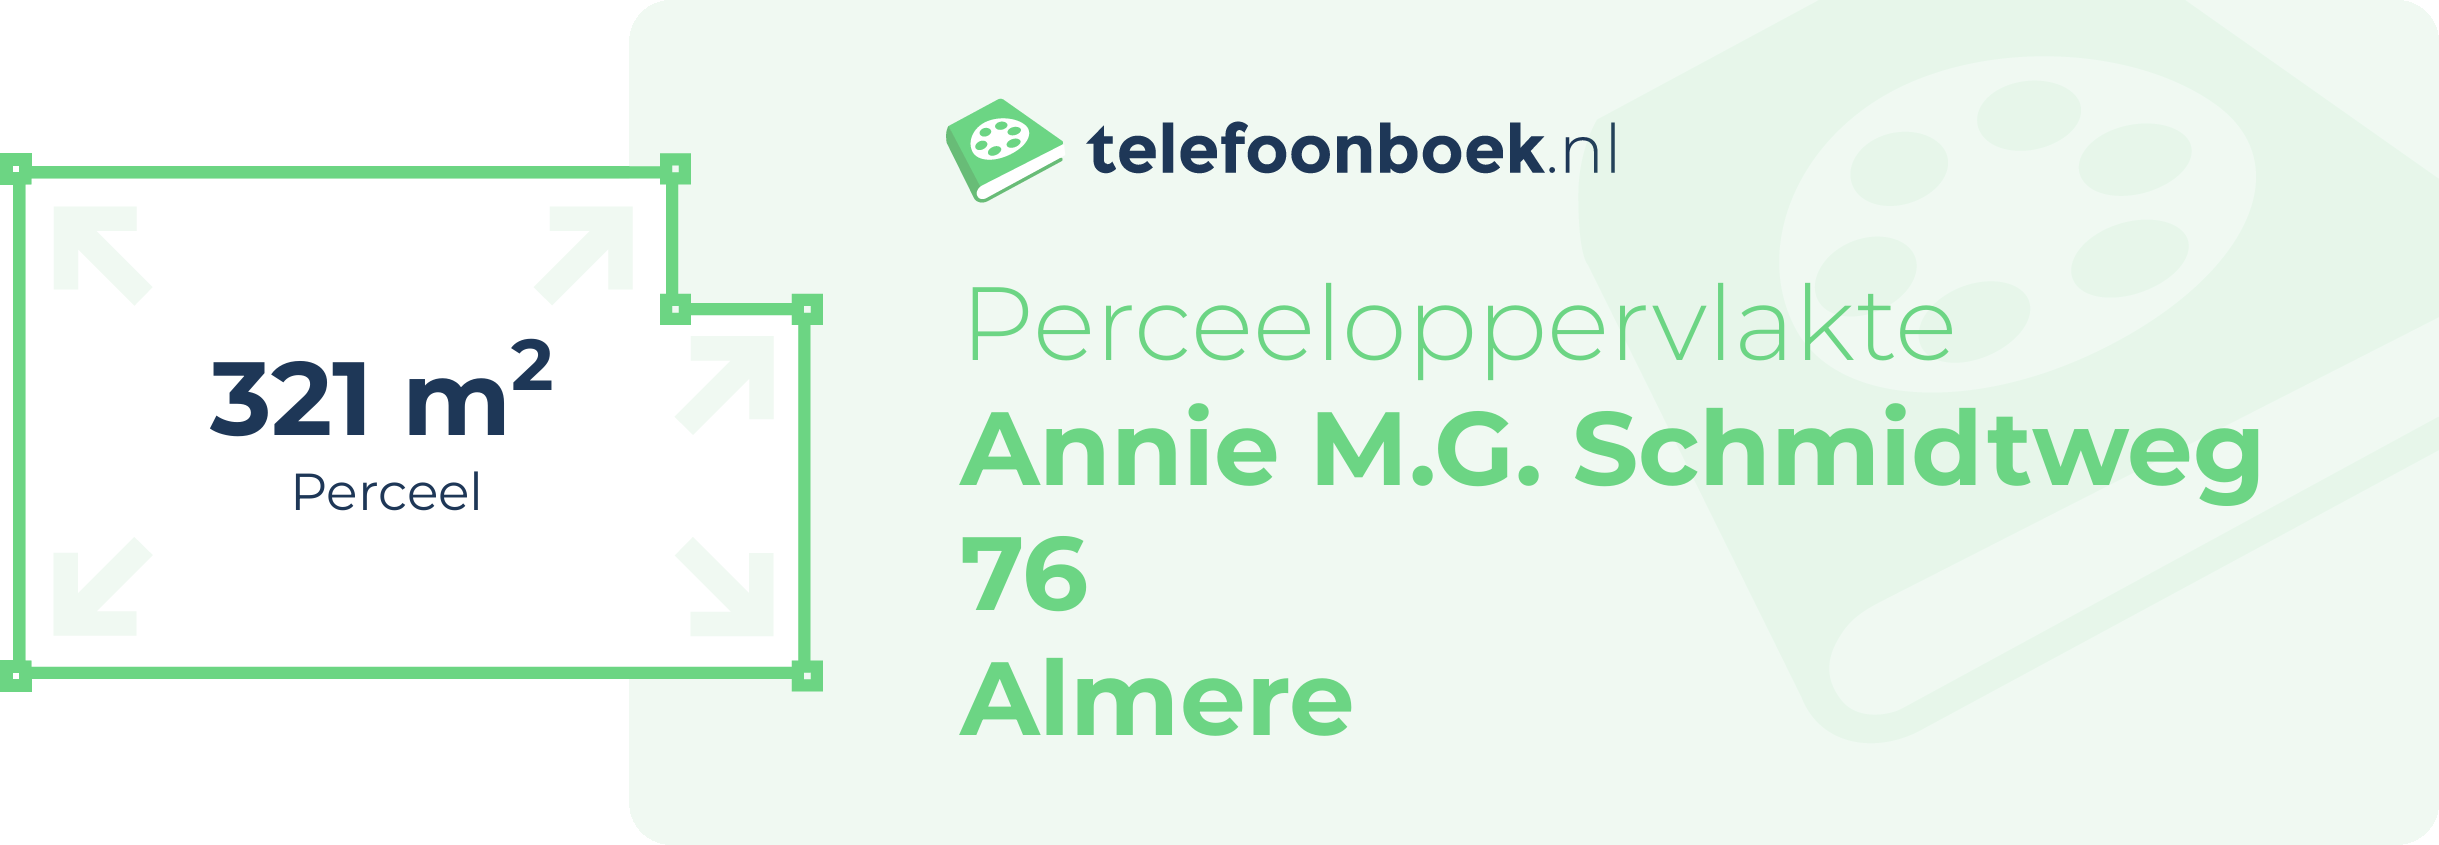 Perceeloppervlakte Annie M.G. Schmidtweg 76 Almere